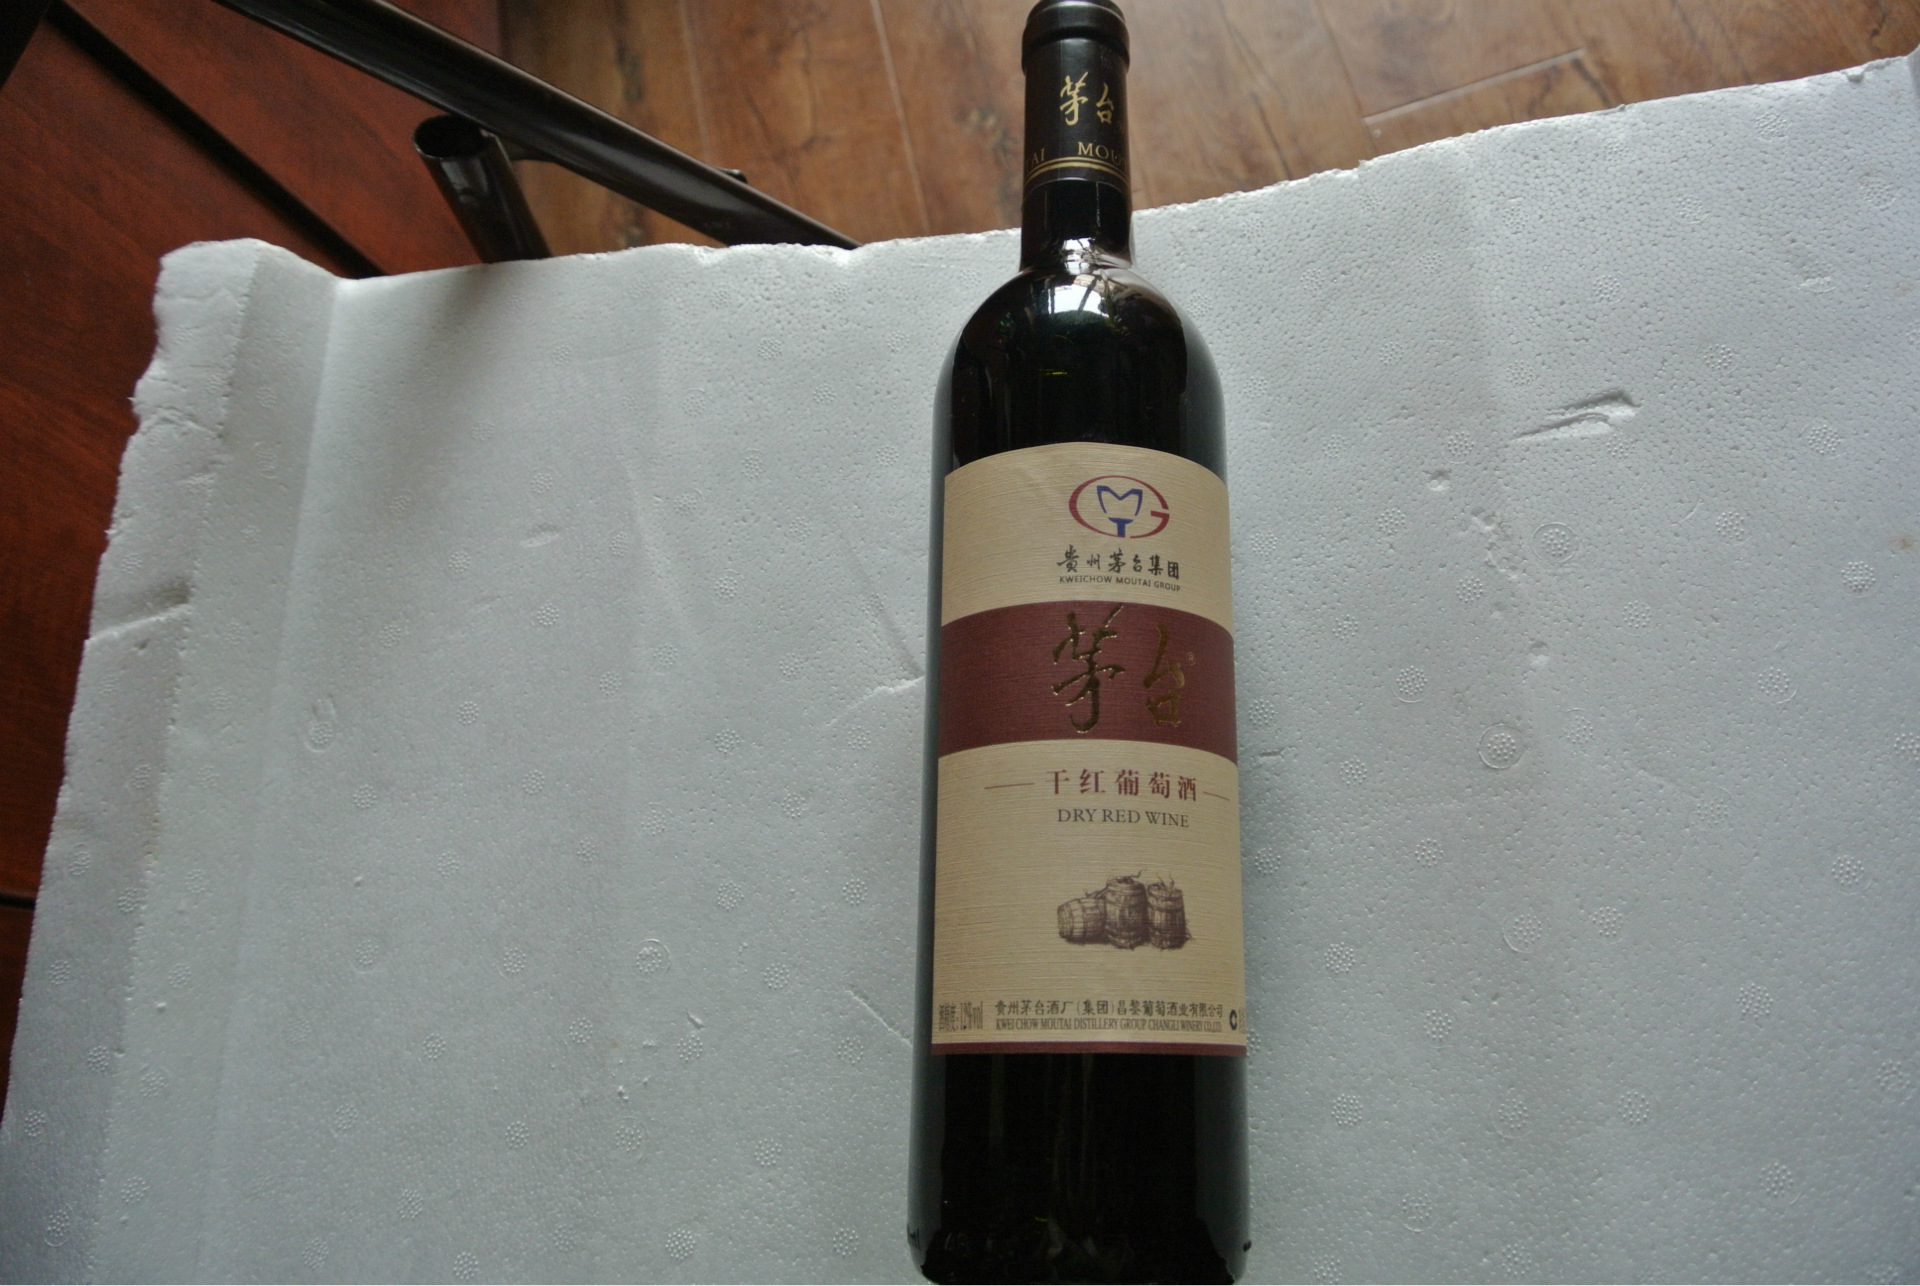 【【新品推荐】茅台干红葡萄酒 天鸿酒业红酒